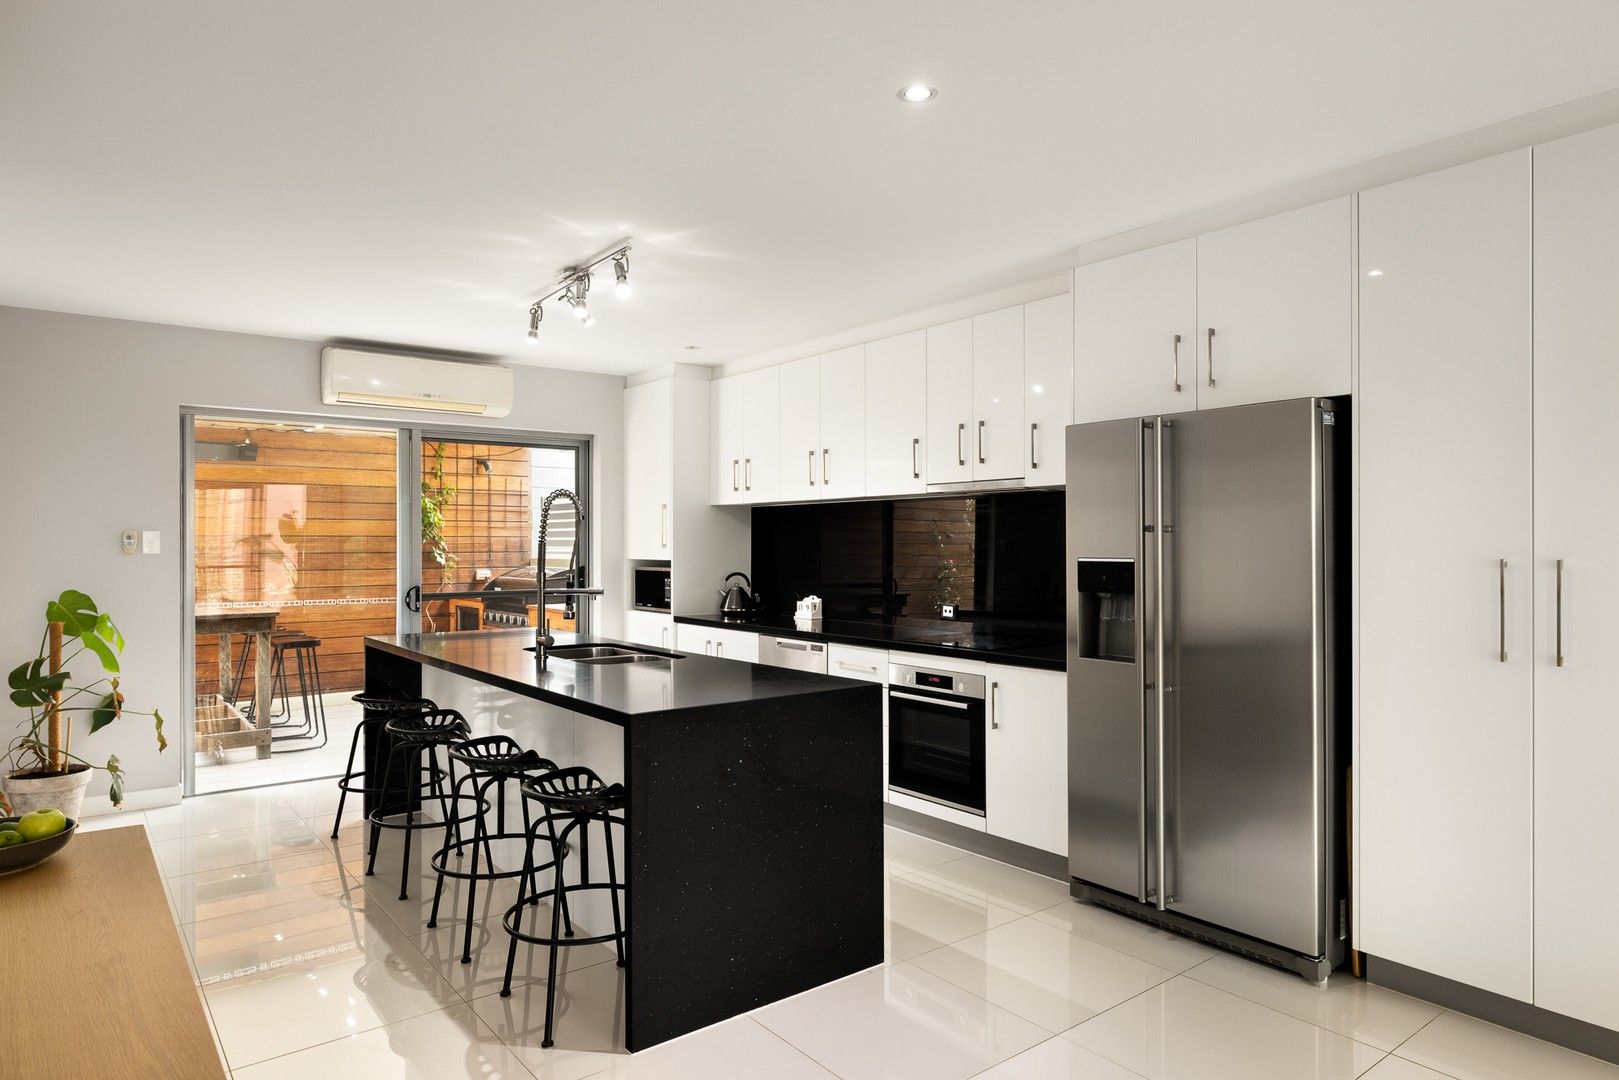 2 bedrooms Apartment / Unit / Flat in 1/72 Harcourt Street NEW FARM QLD, 4005